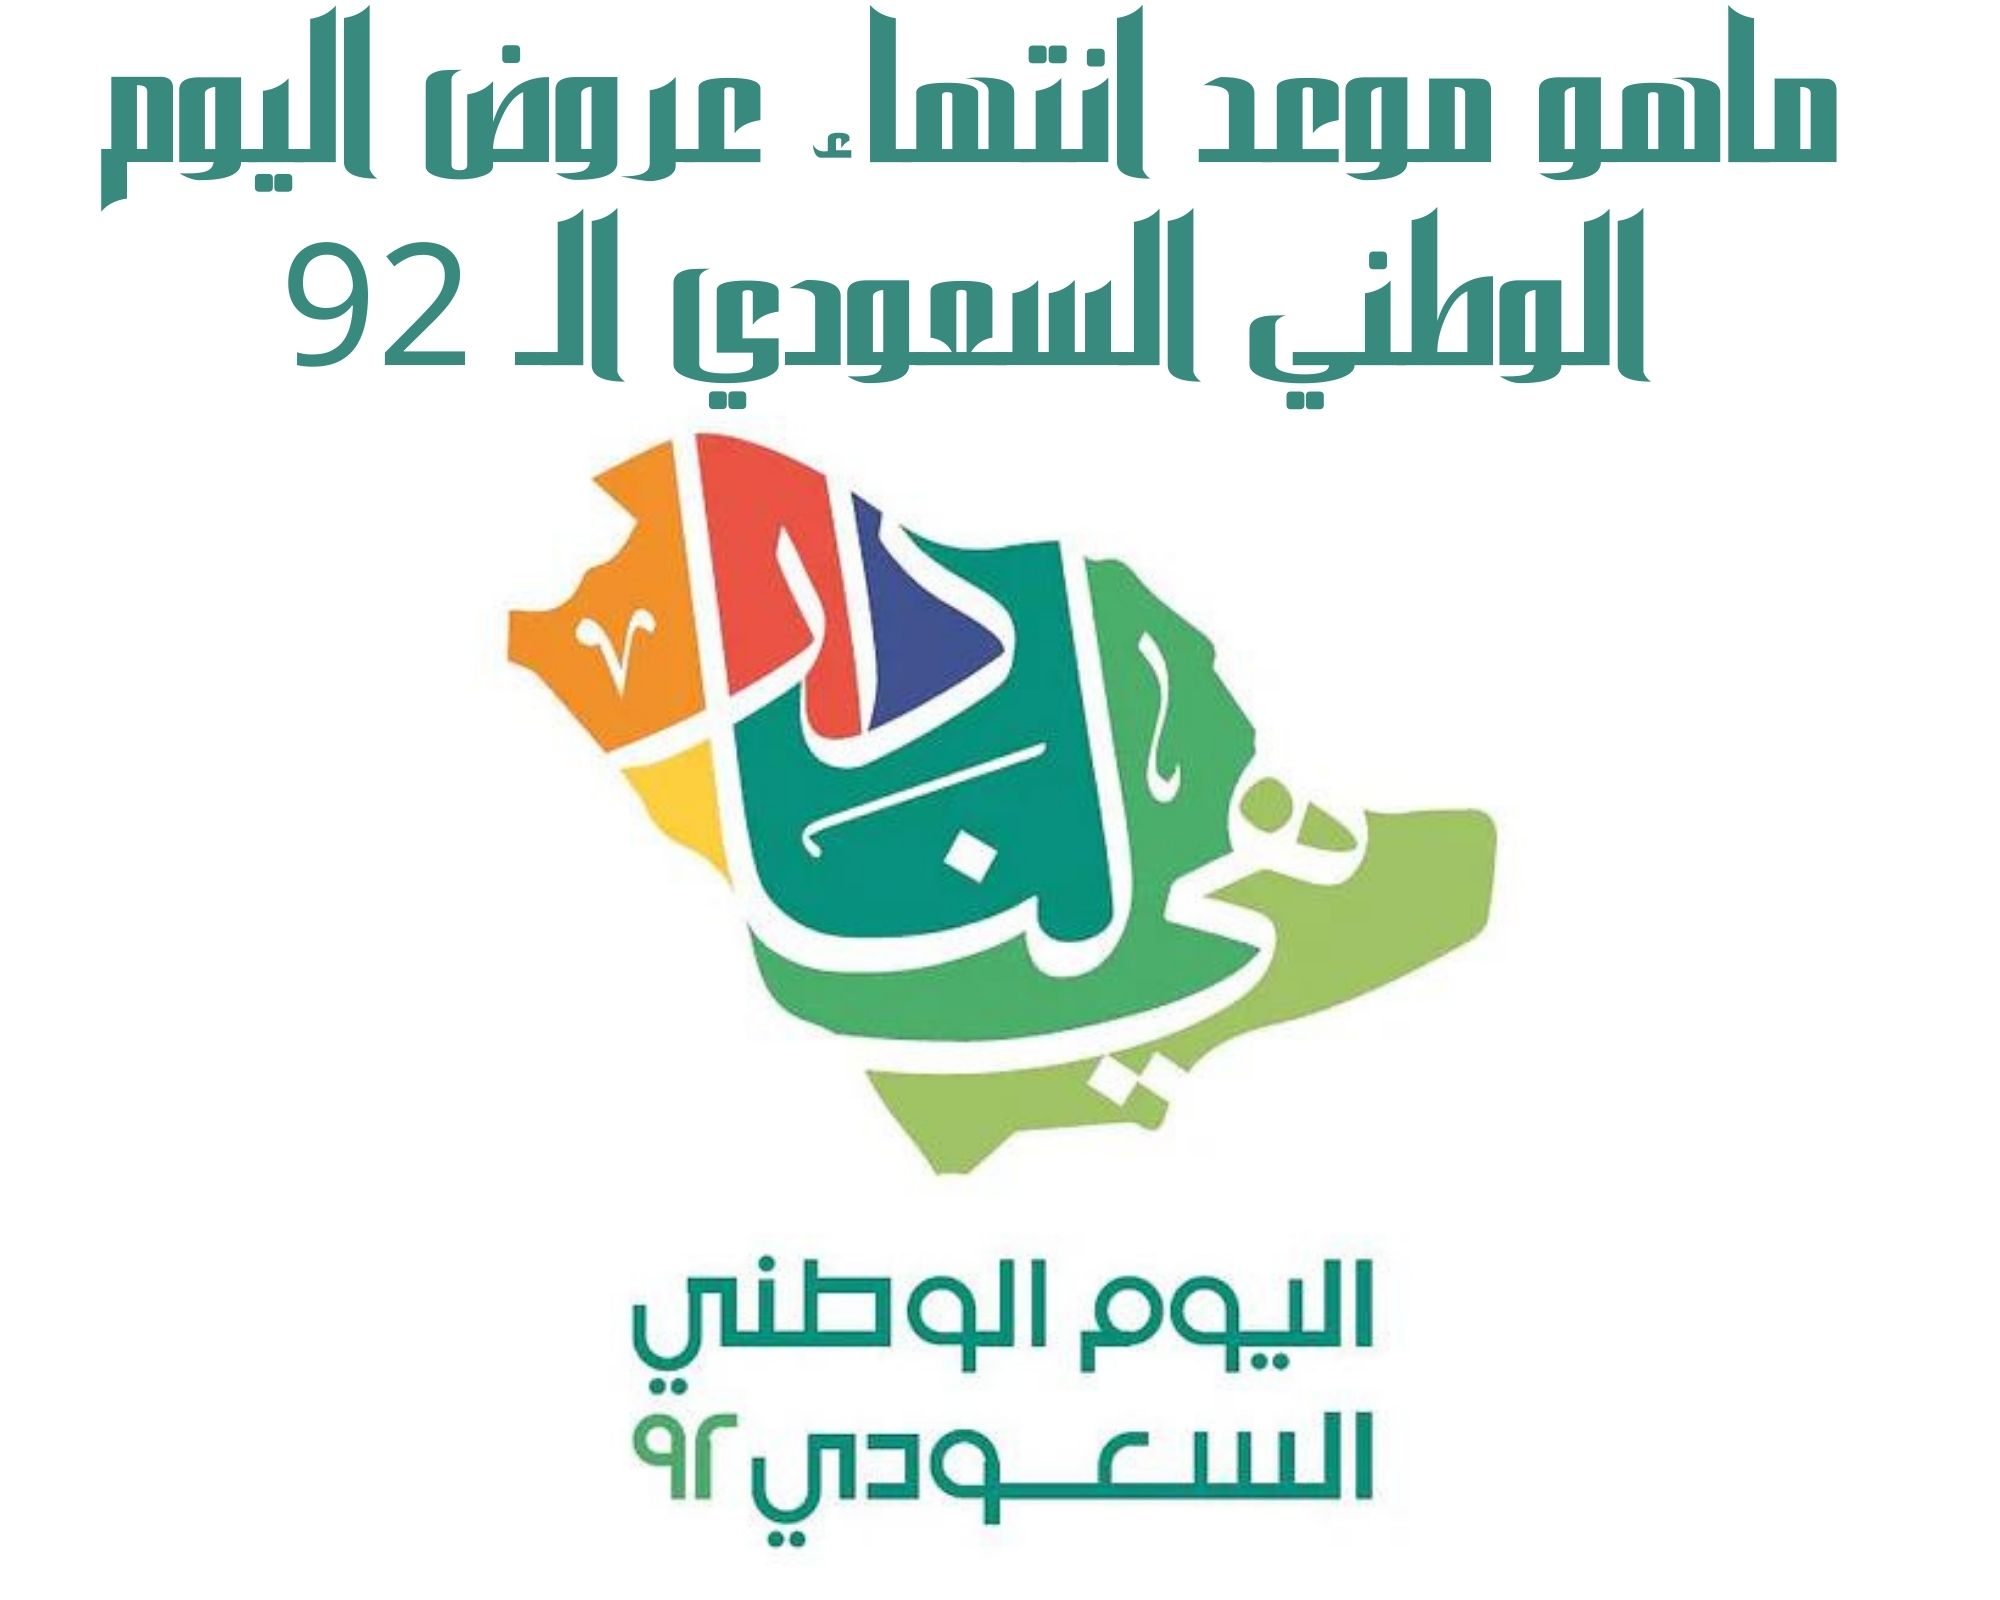 ماهو موعد انتهاء عروض اليوم الوطني السعودي الـ 92